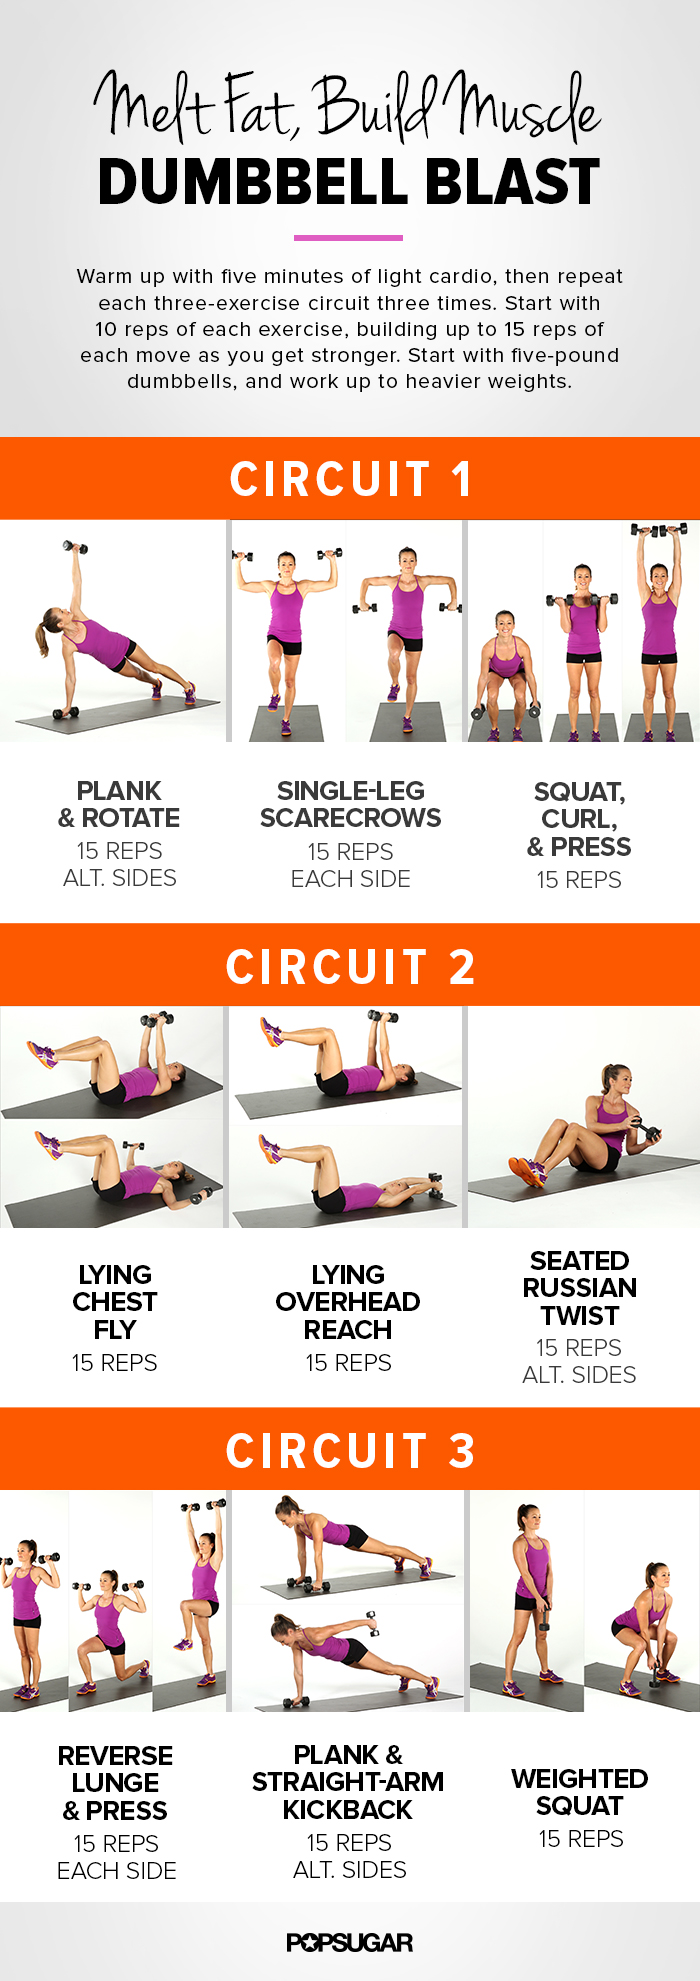 4 Best Images of Printable Dumbbell Workouts For Men Women Full Body